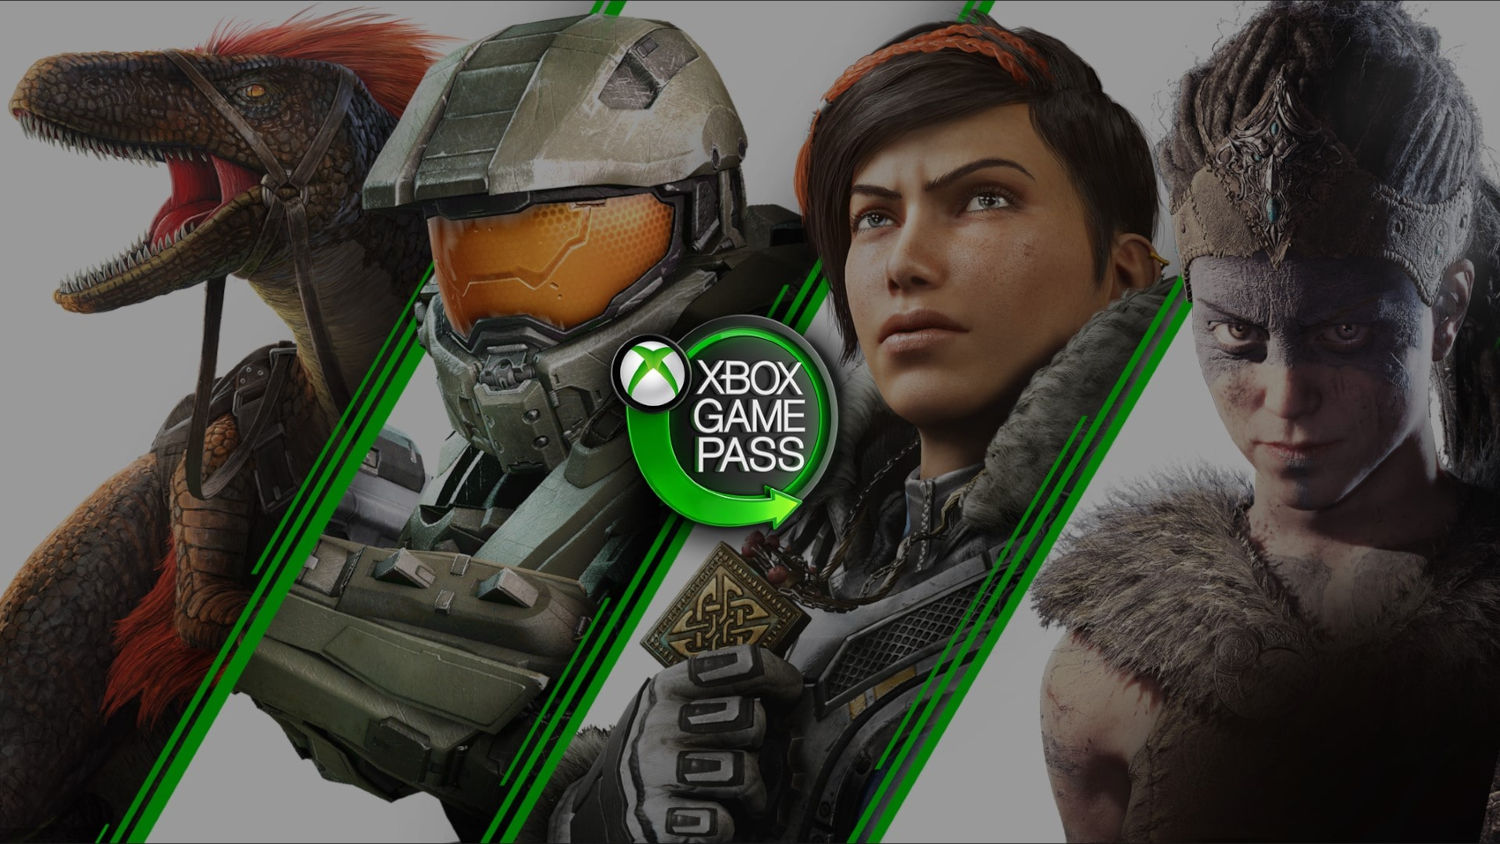 Valor promocional de R$ 5 para assinar Xbox Game Pass deixa de ser